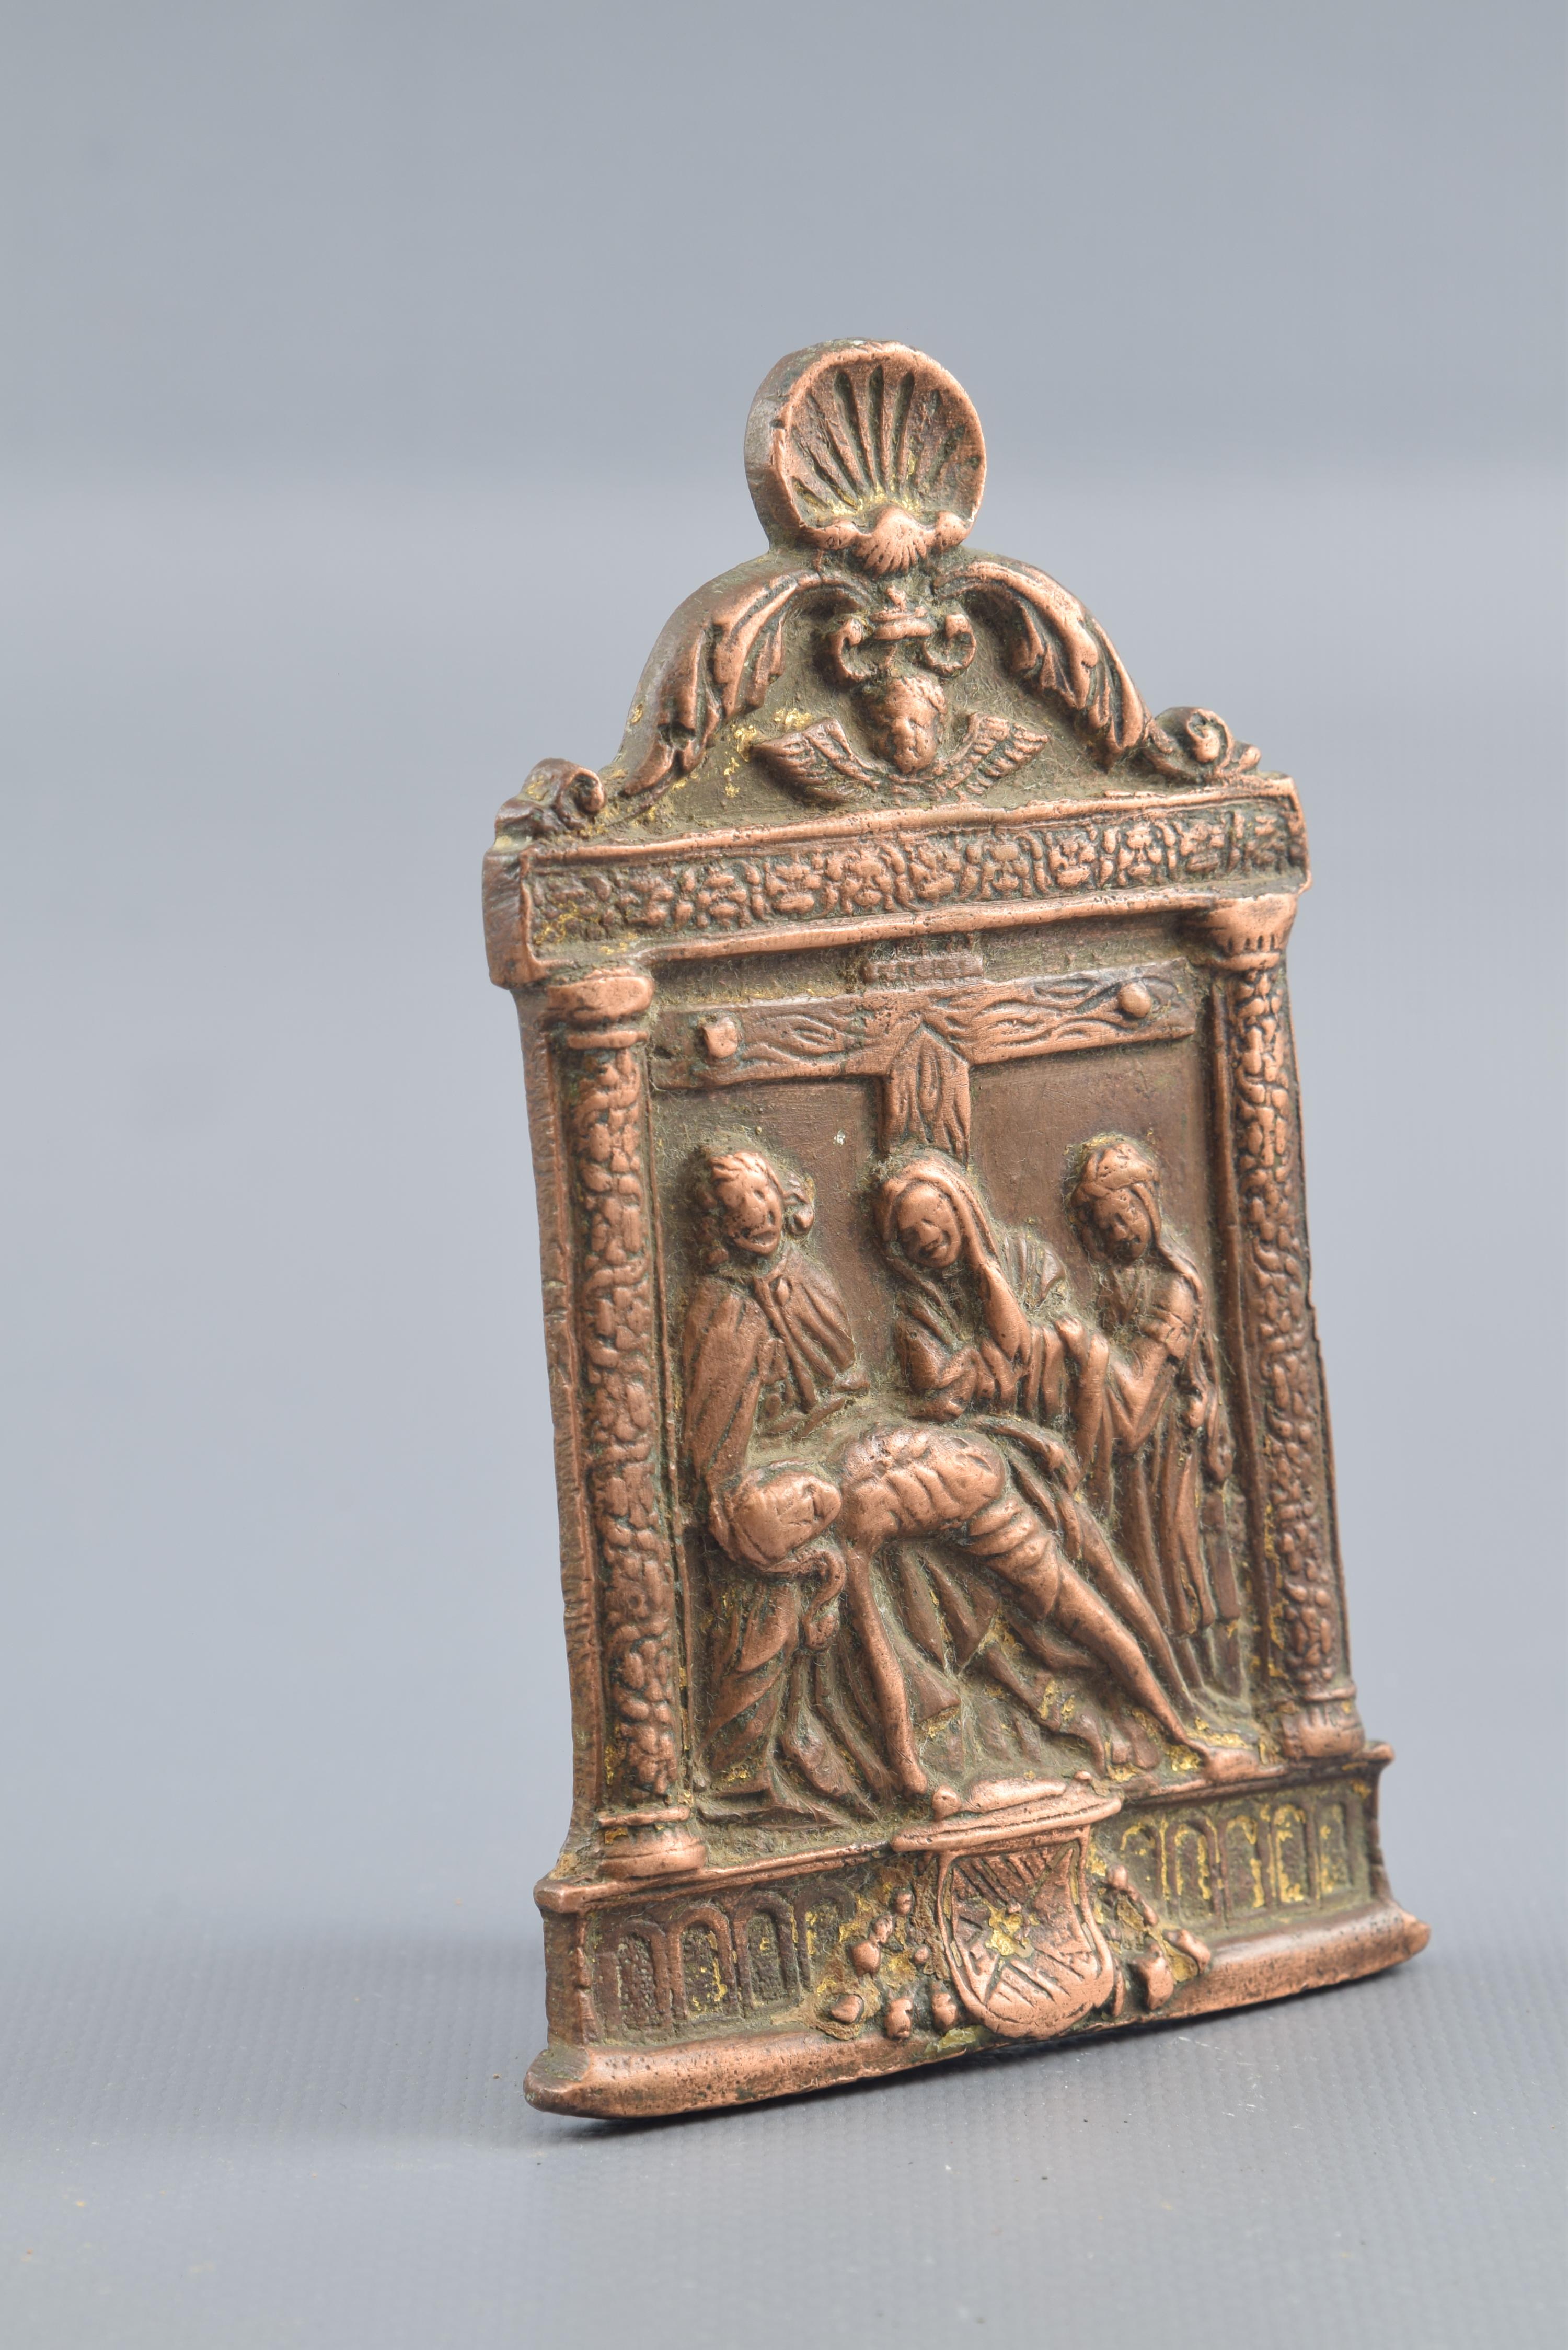 Papierhalter Bronze, 16. Jahrhundert.
Portapaz aus Bronze mit einem 